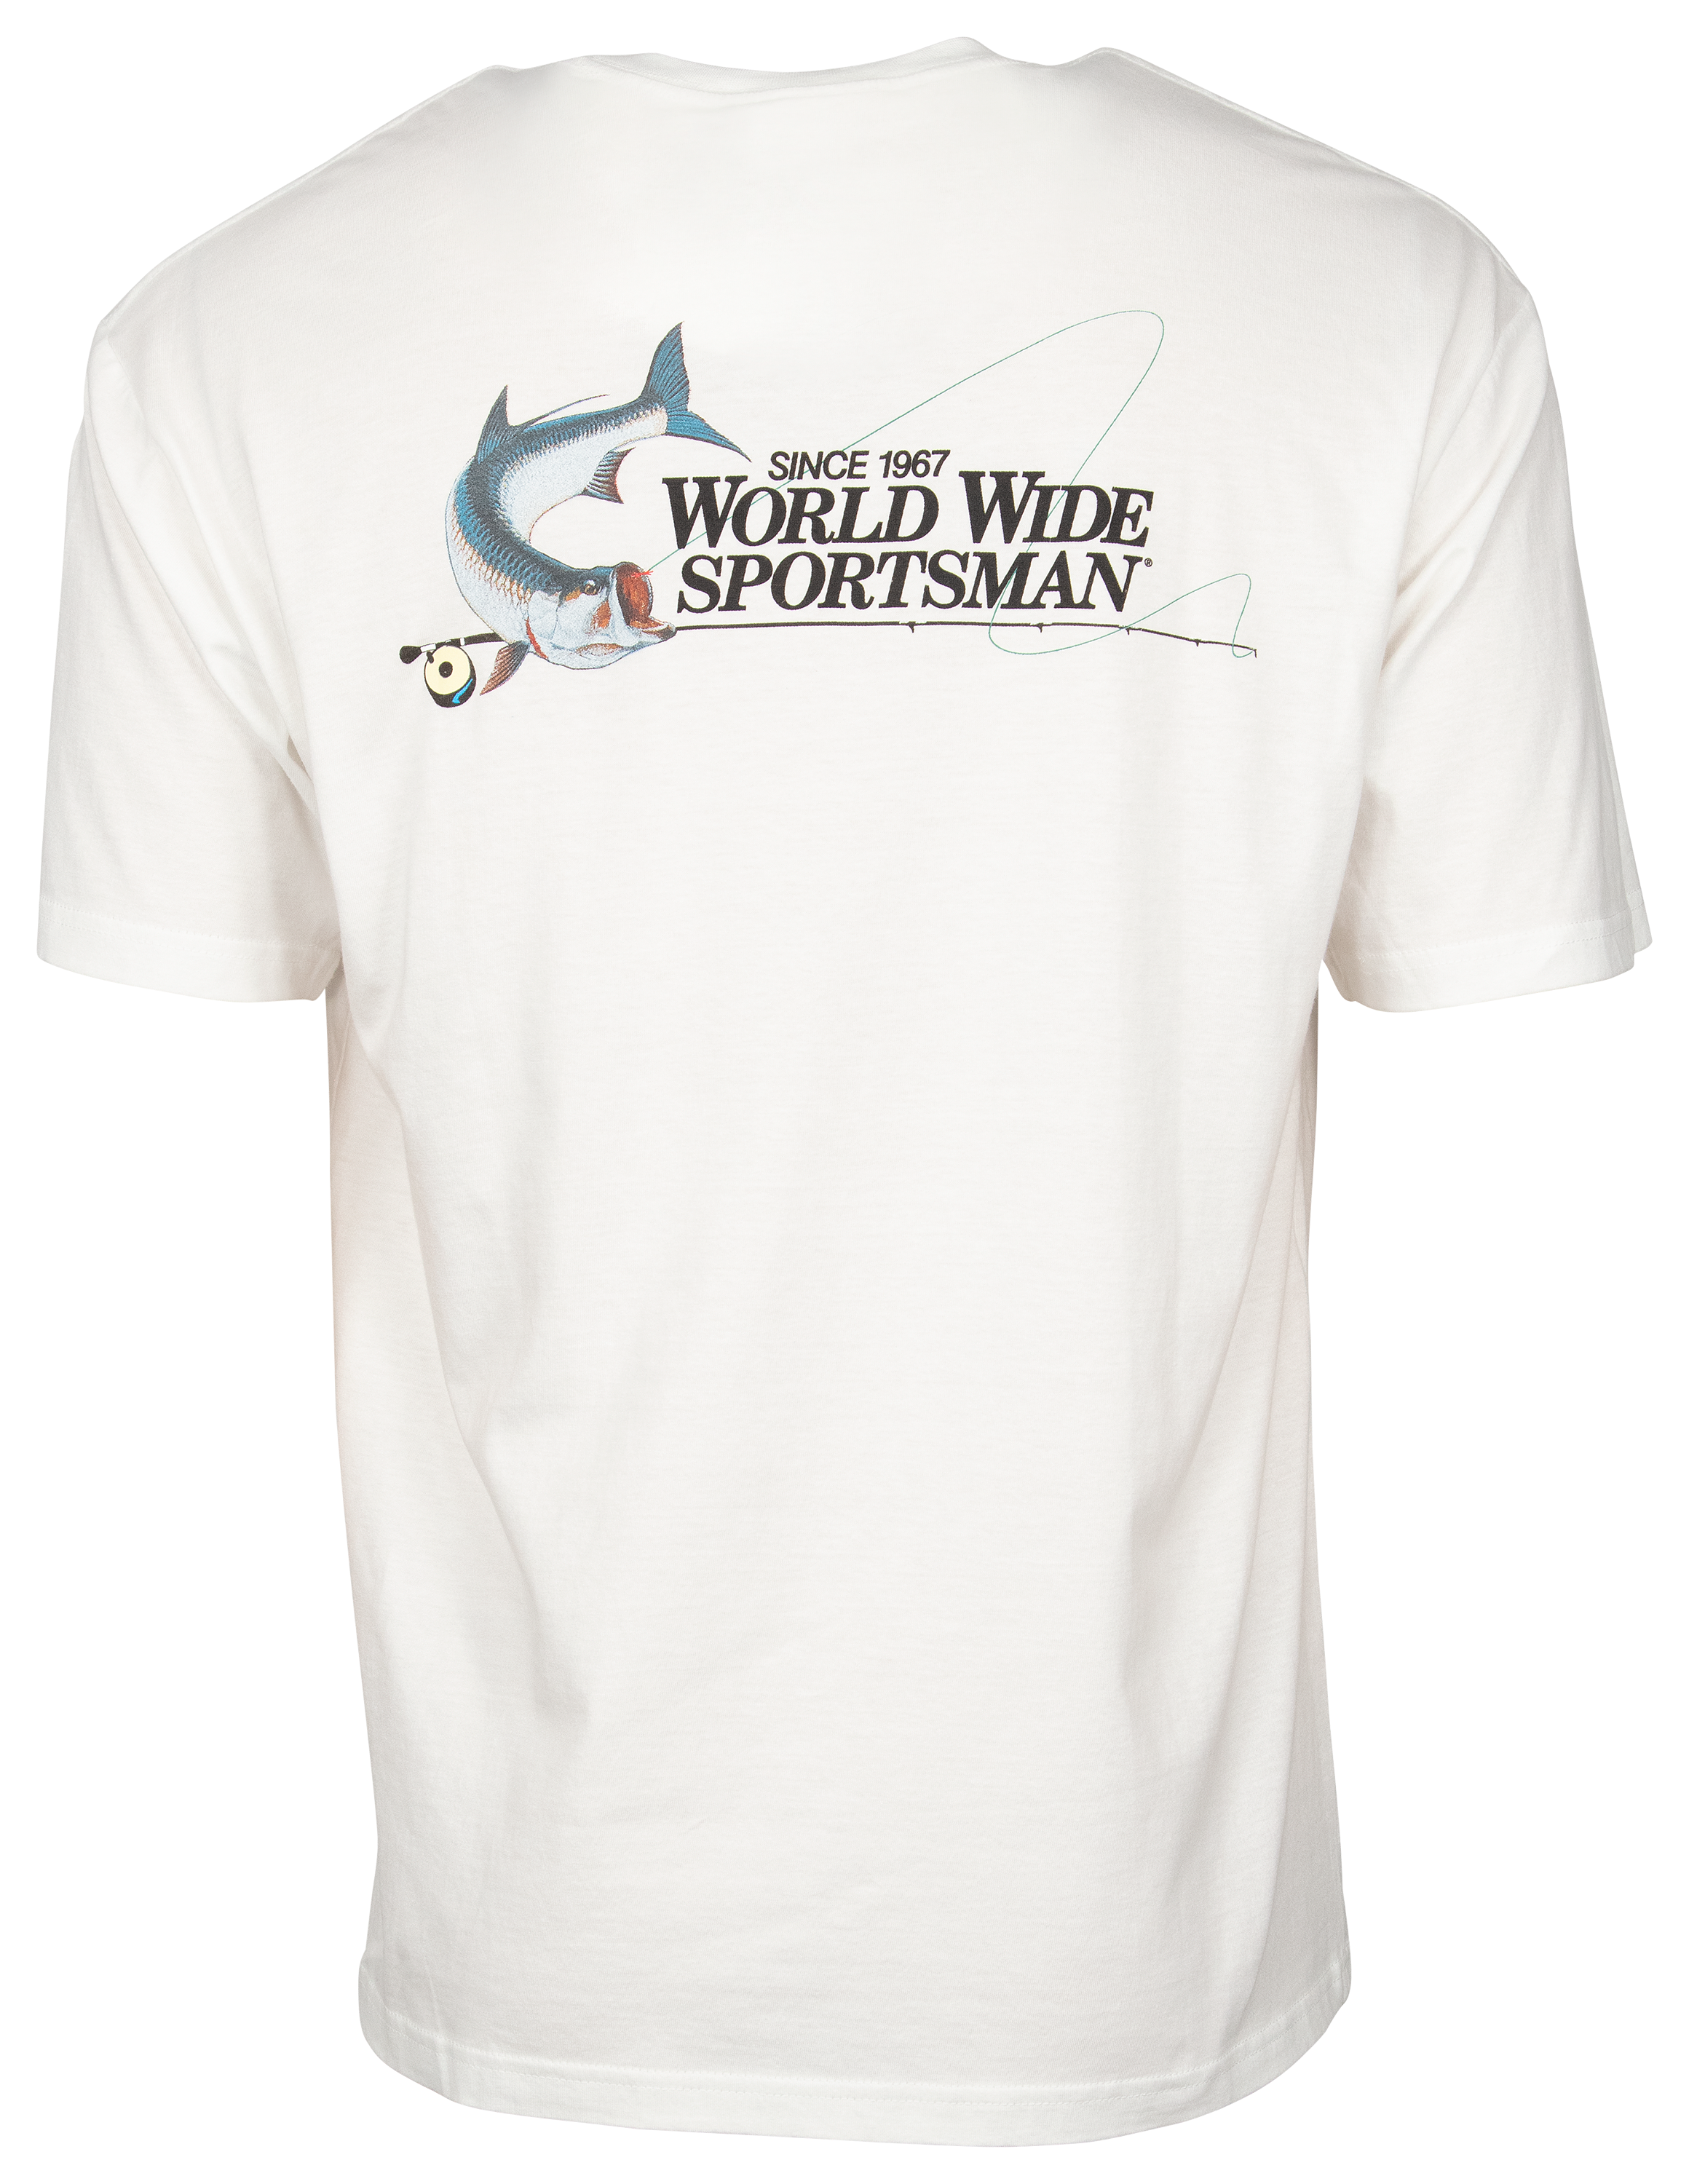 World Wide Sportsman Logo Graphic Short-Sleeve T-Shirt for Men - White - S